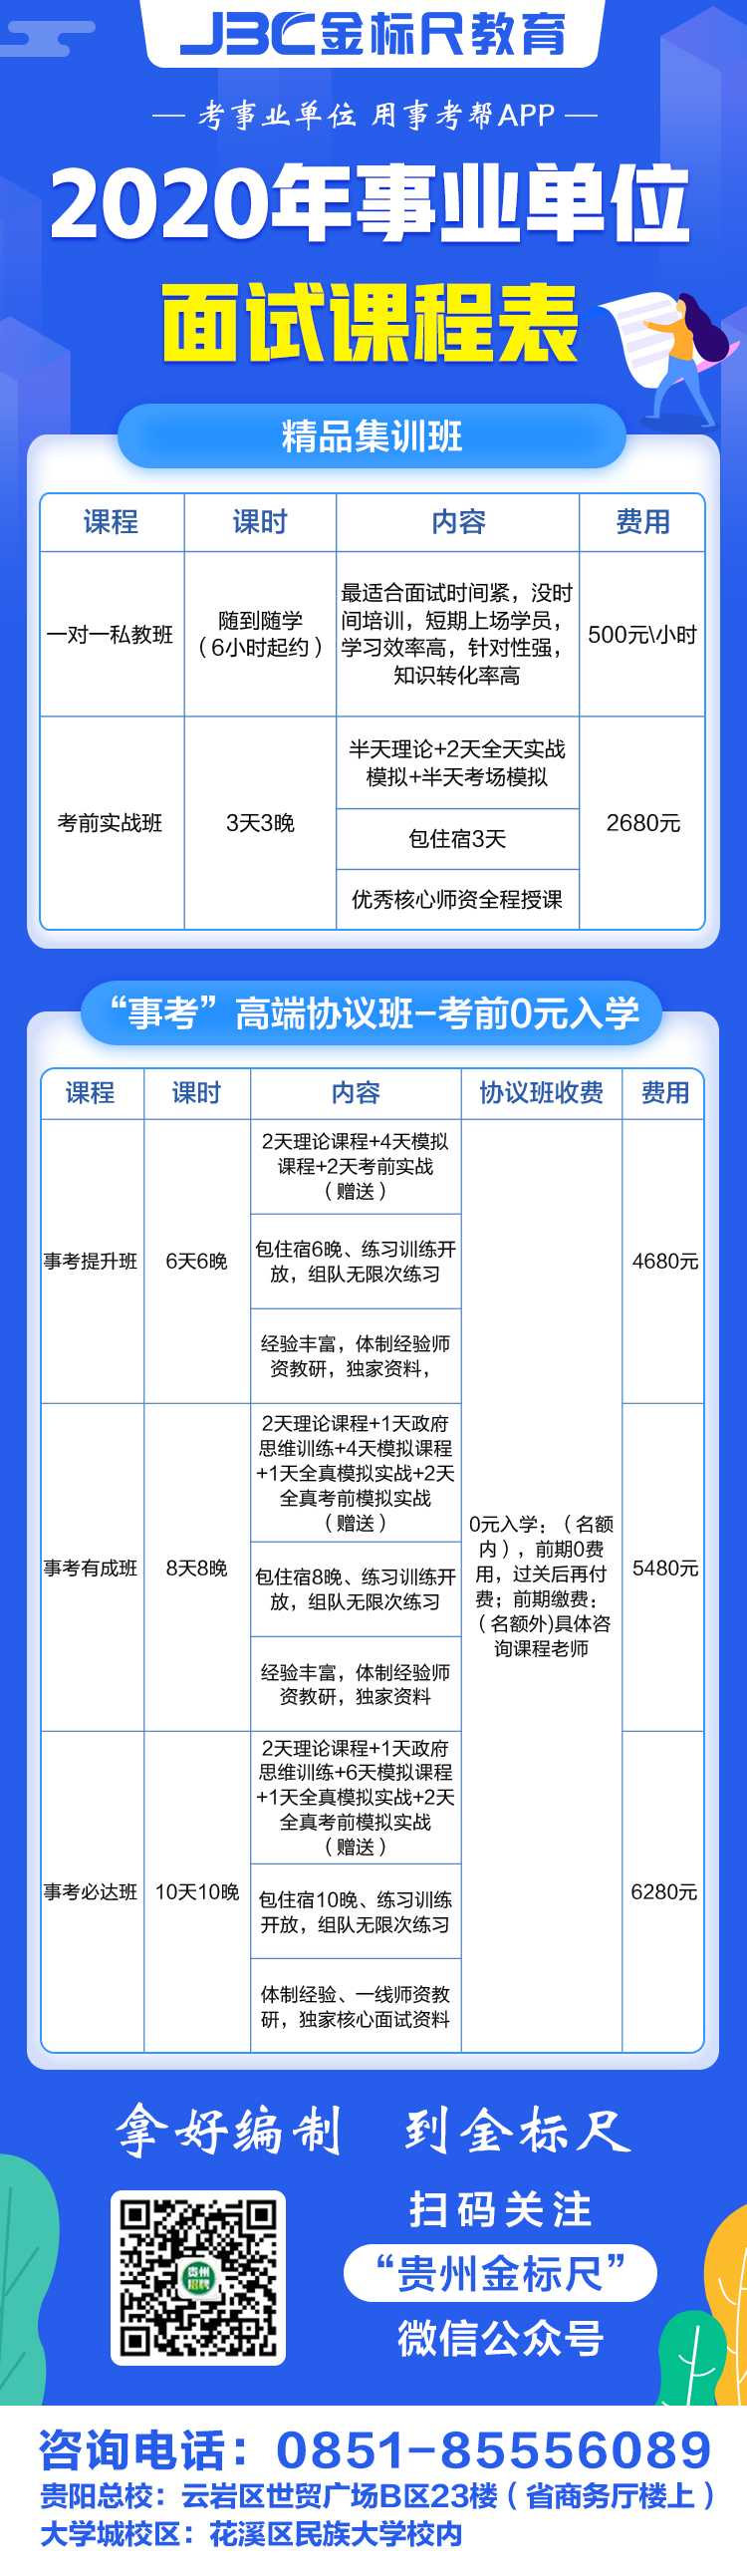 贵州金标尺事业单位课程